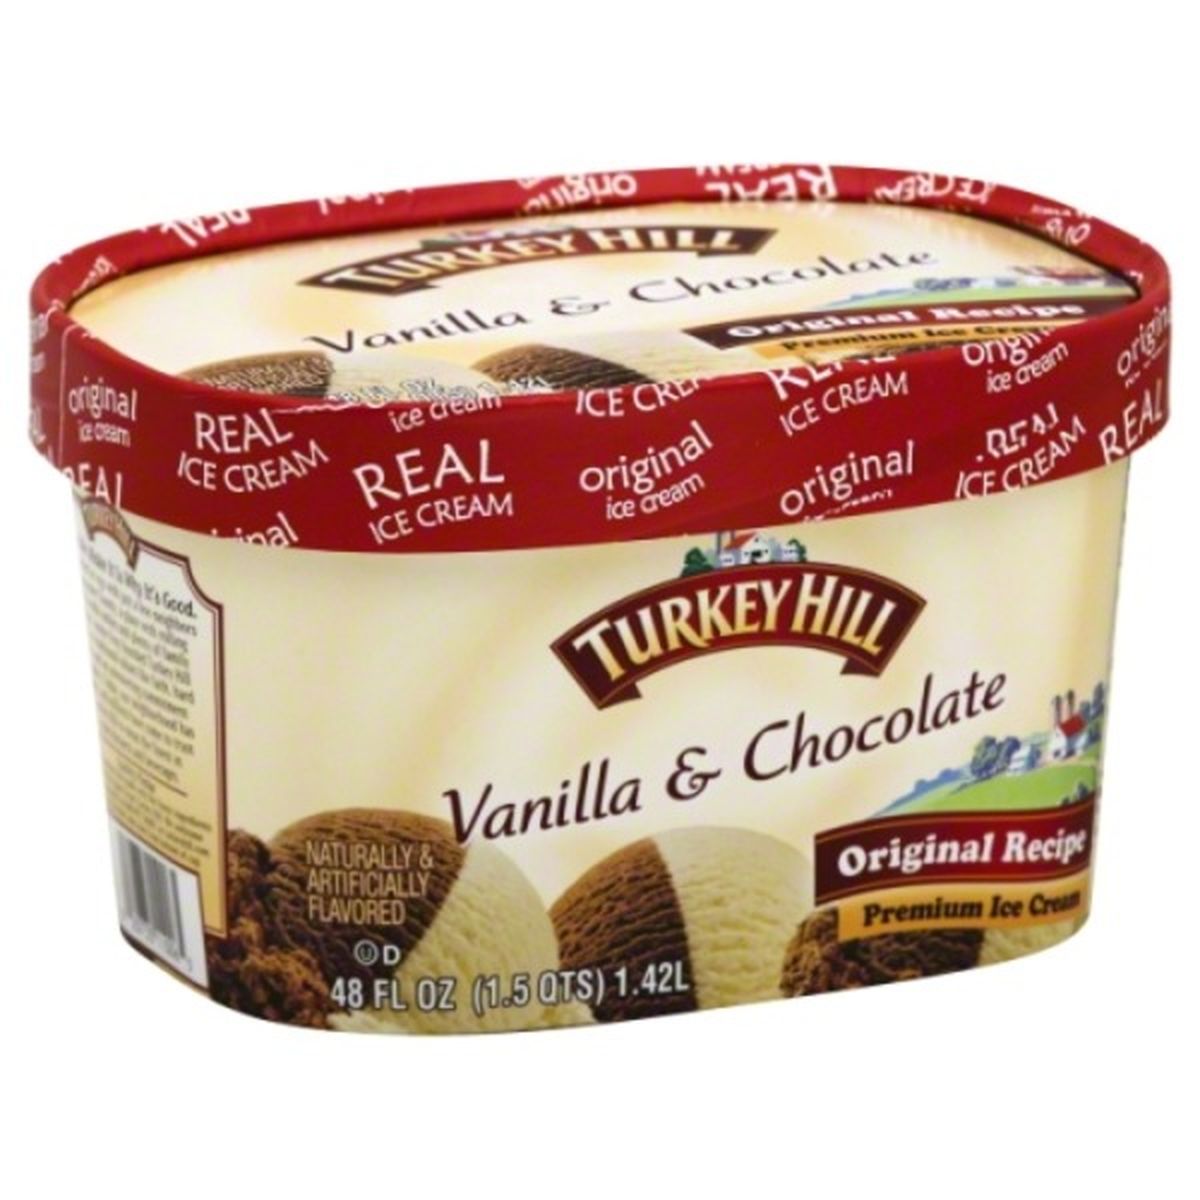 Calories in Turkey Hill Ice Cream, Premium, Vanilla & Chocolate